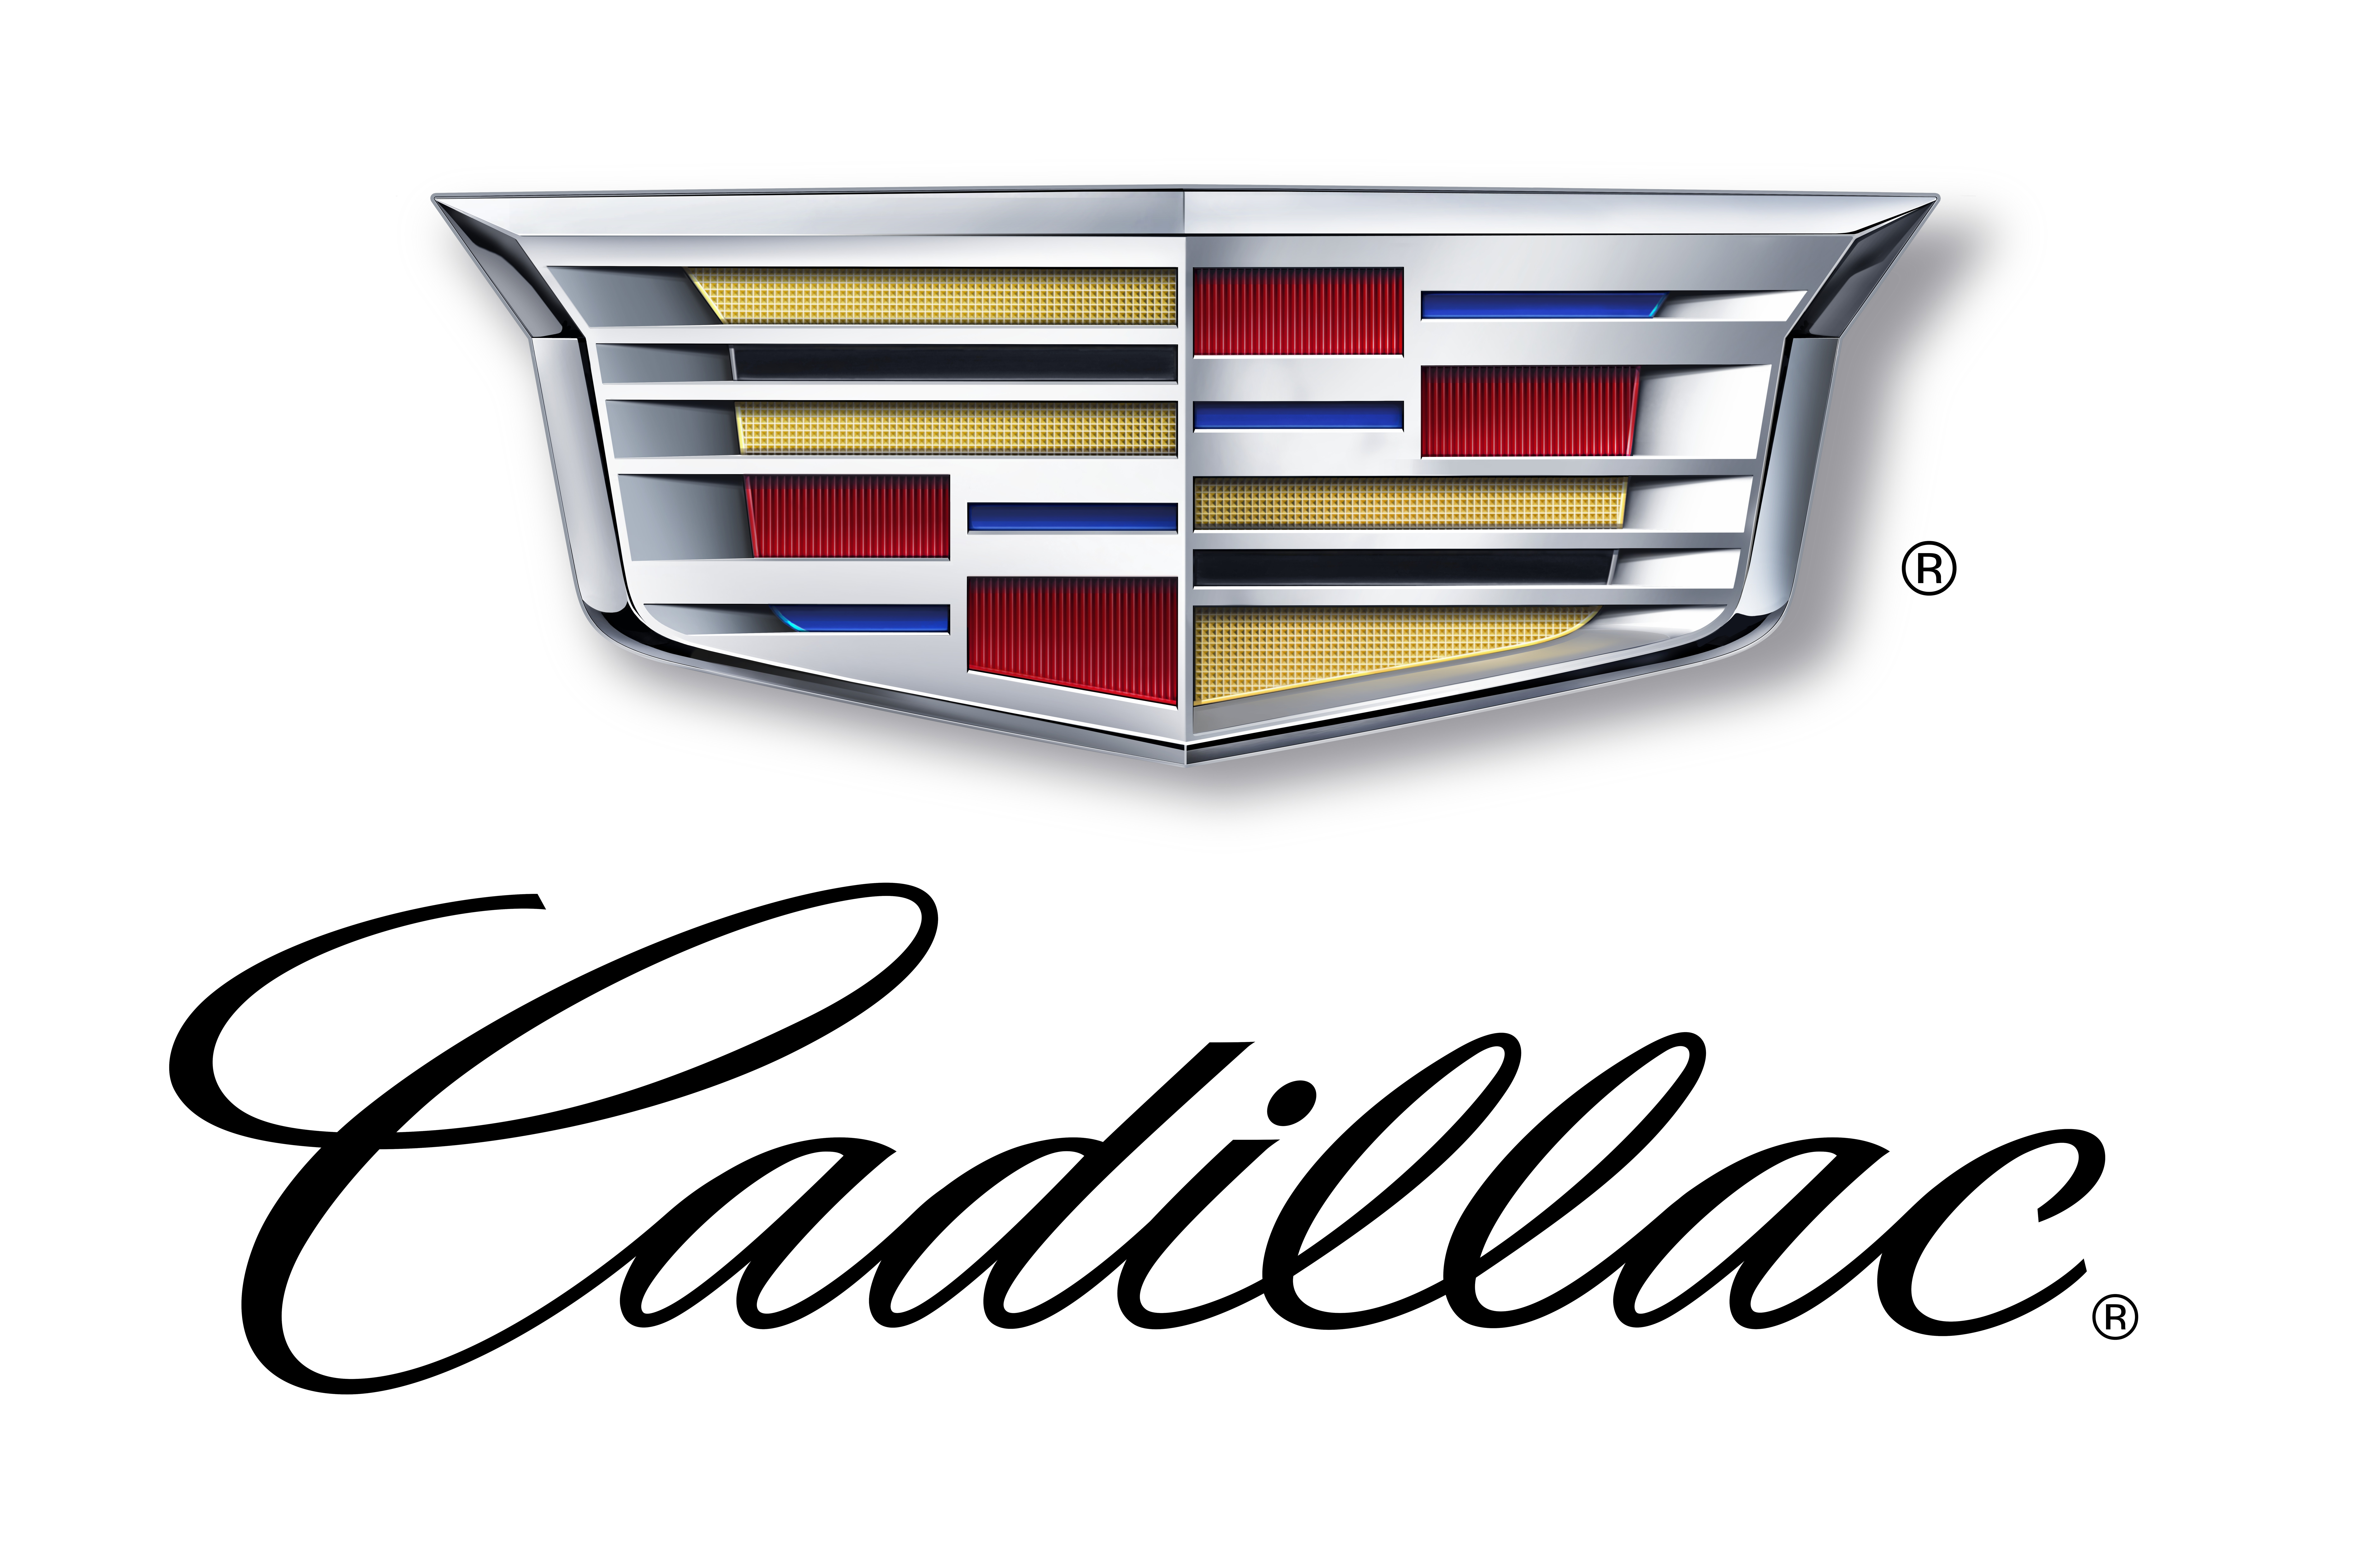 Delaware Cadillac